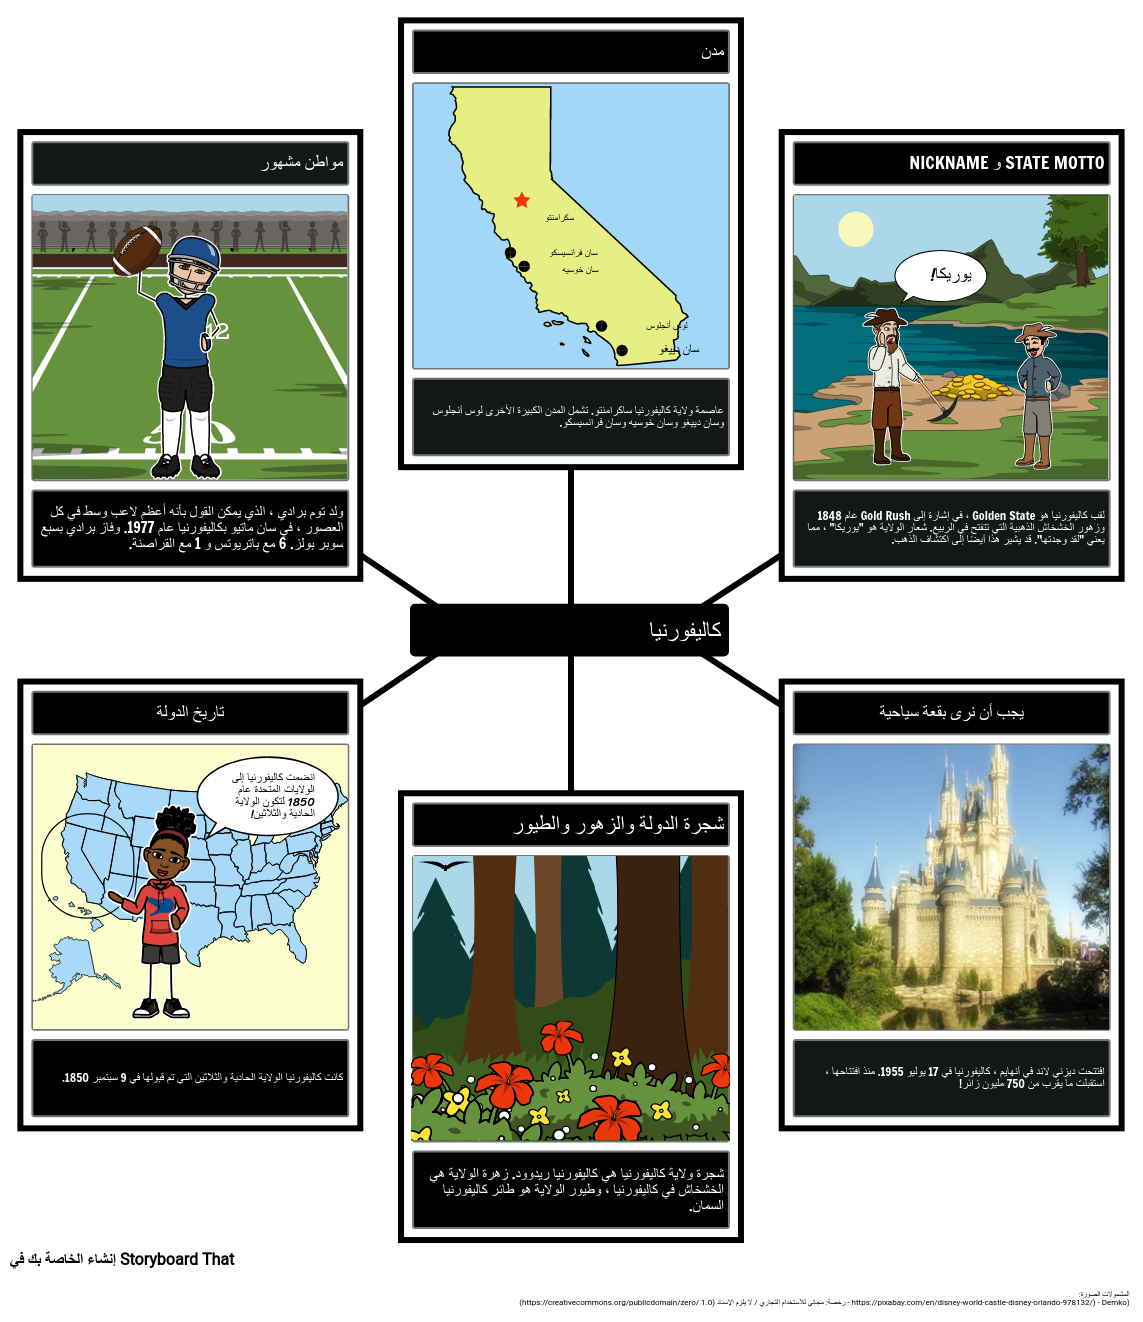 كاليفورنيا: ملف تعريف الولاية